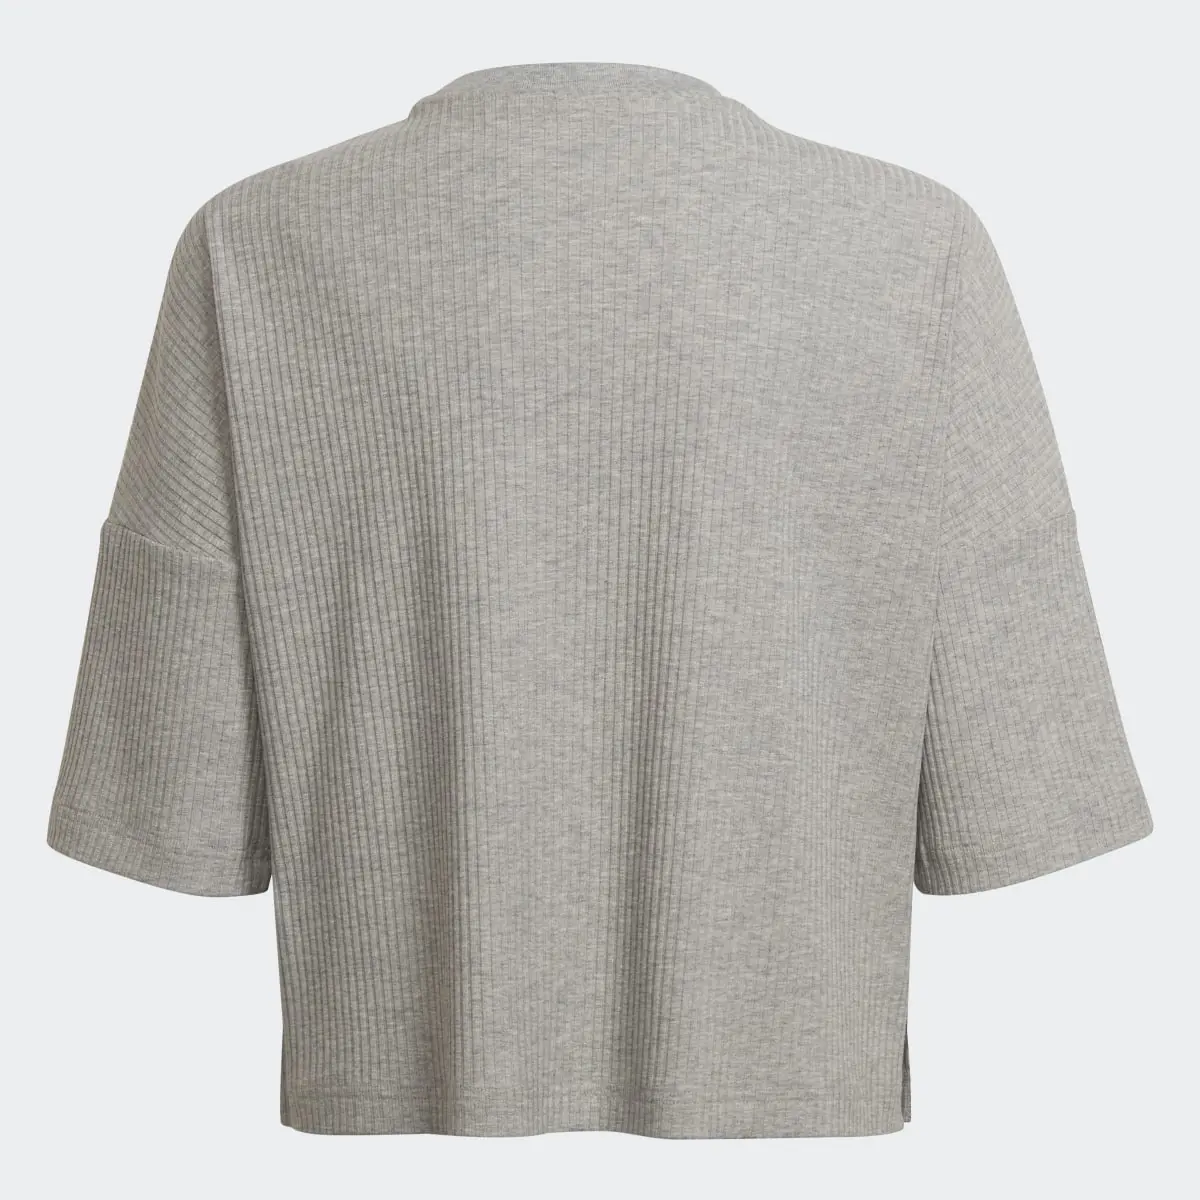 Adidas Yoga Lounge Cotton Comfort Sweatshirt. 2